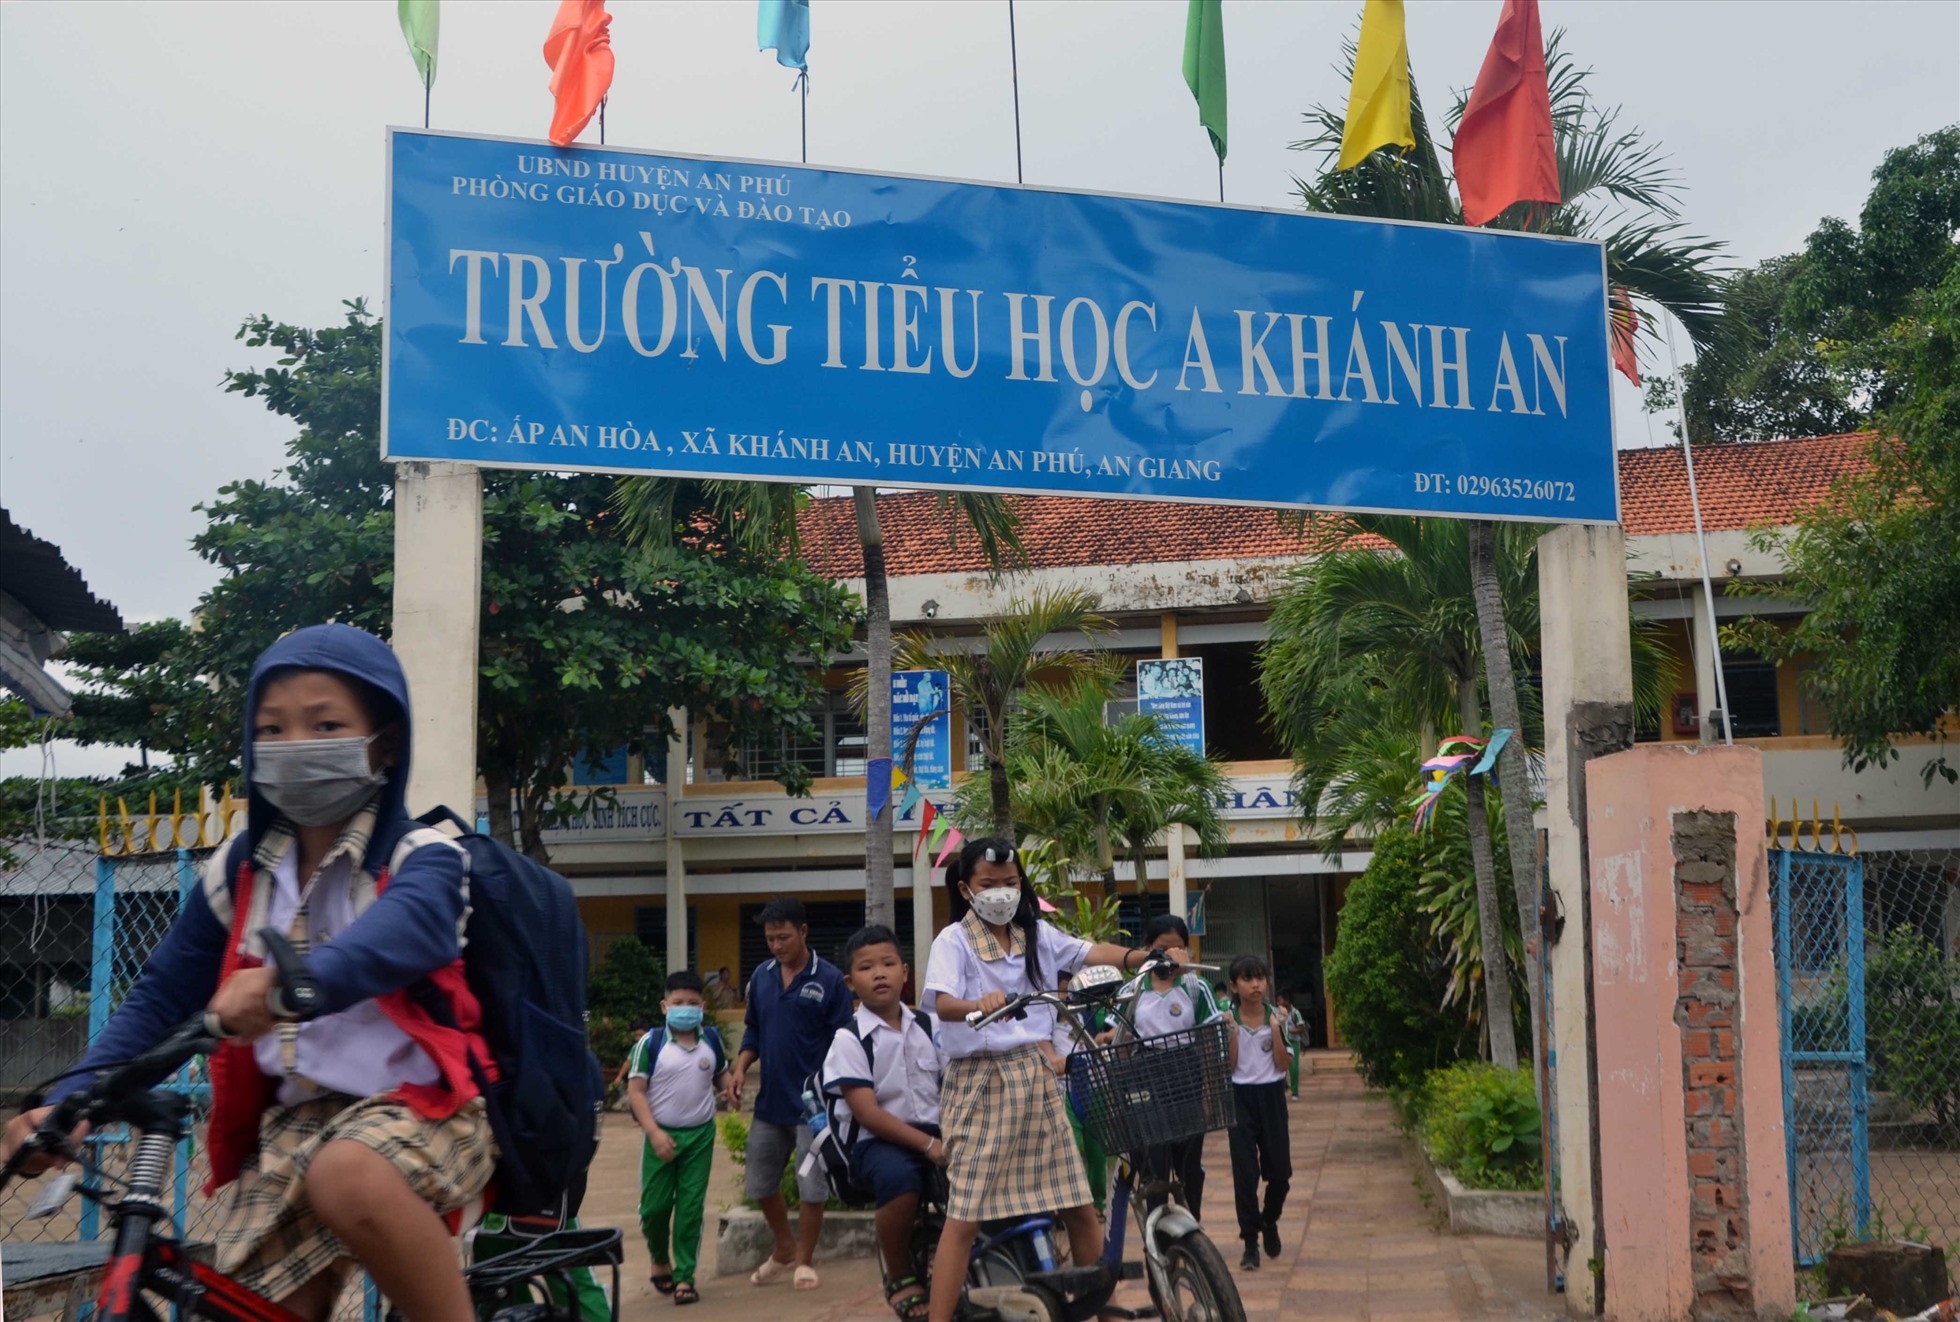 Trường Tiểu học A Khánh An, một trong những điểm trường ven biên huyện An Phú đón nhận nhiều học sinh Việt kiều sang học. Ảnh: LT